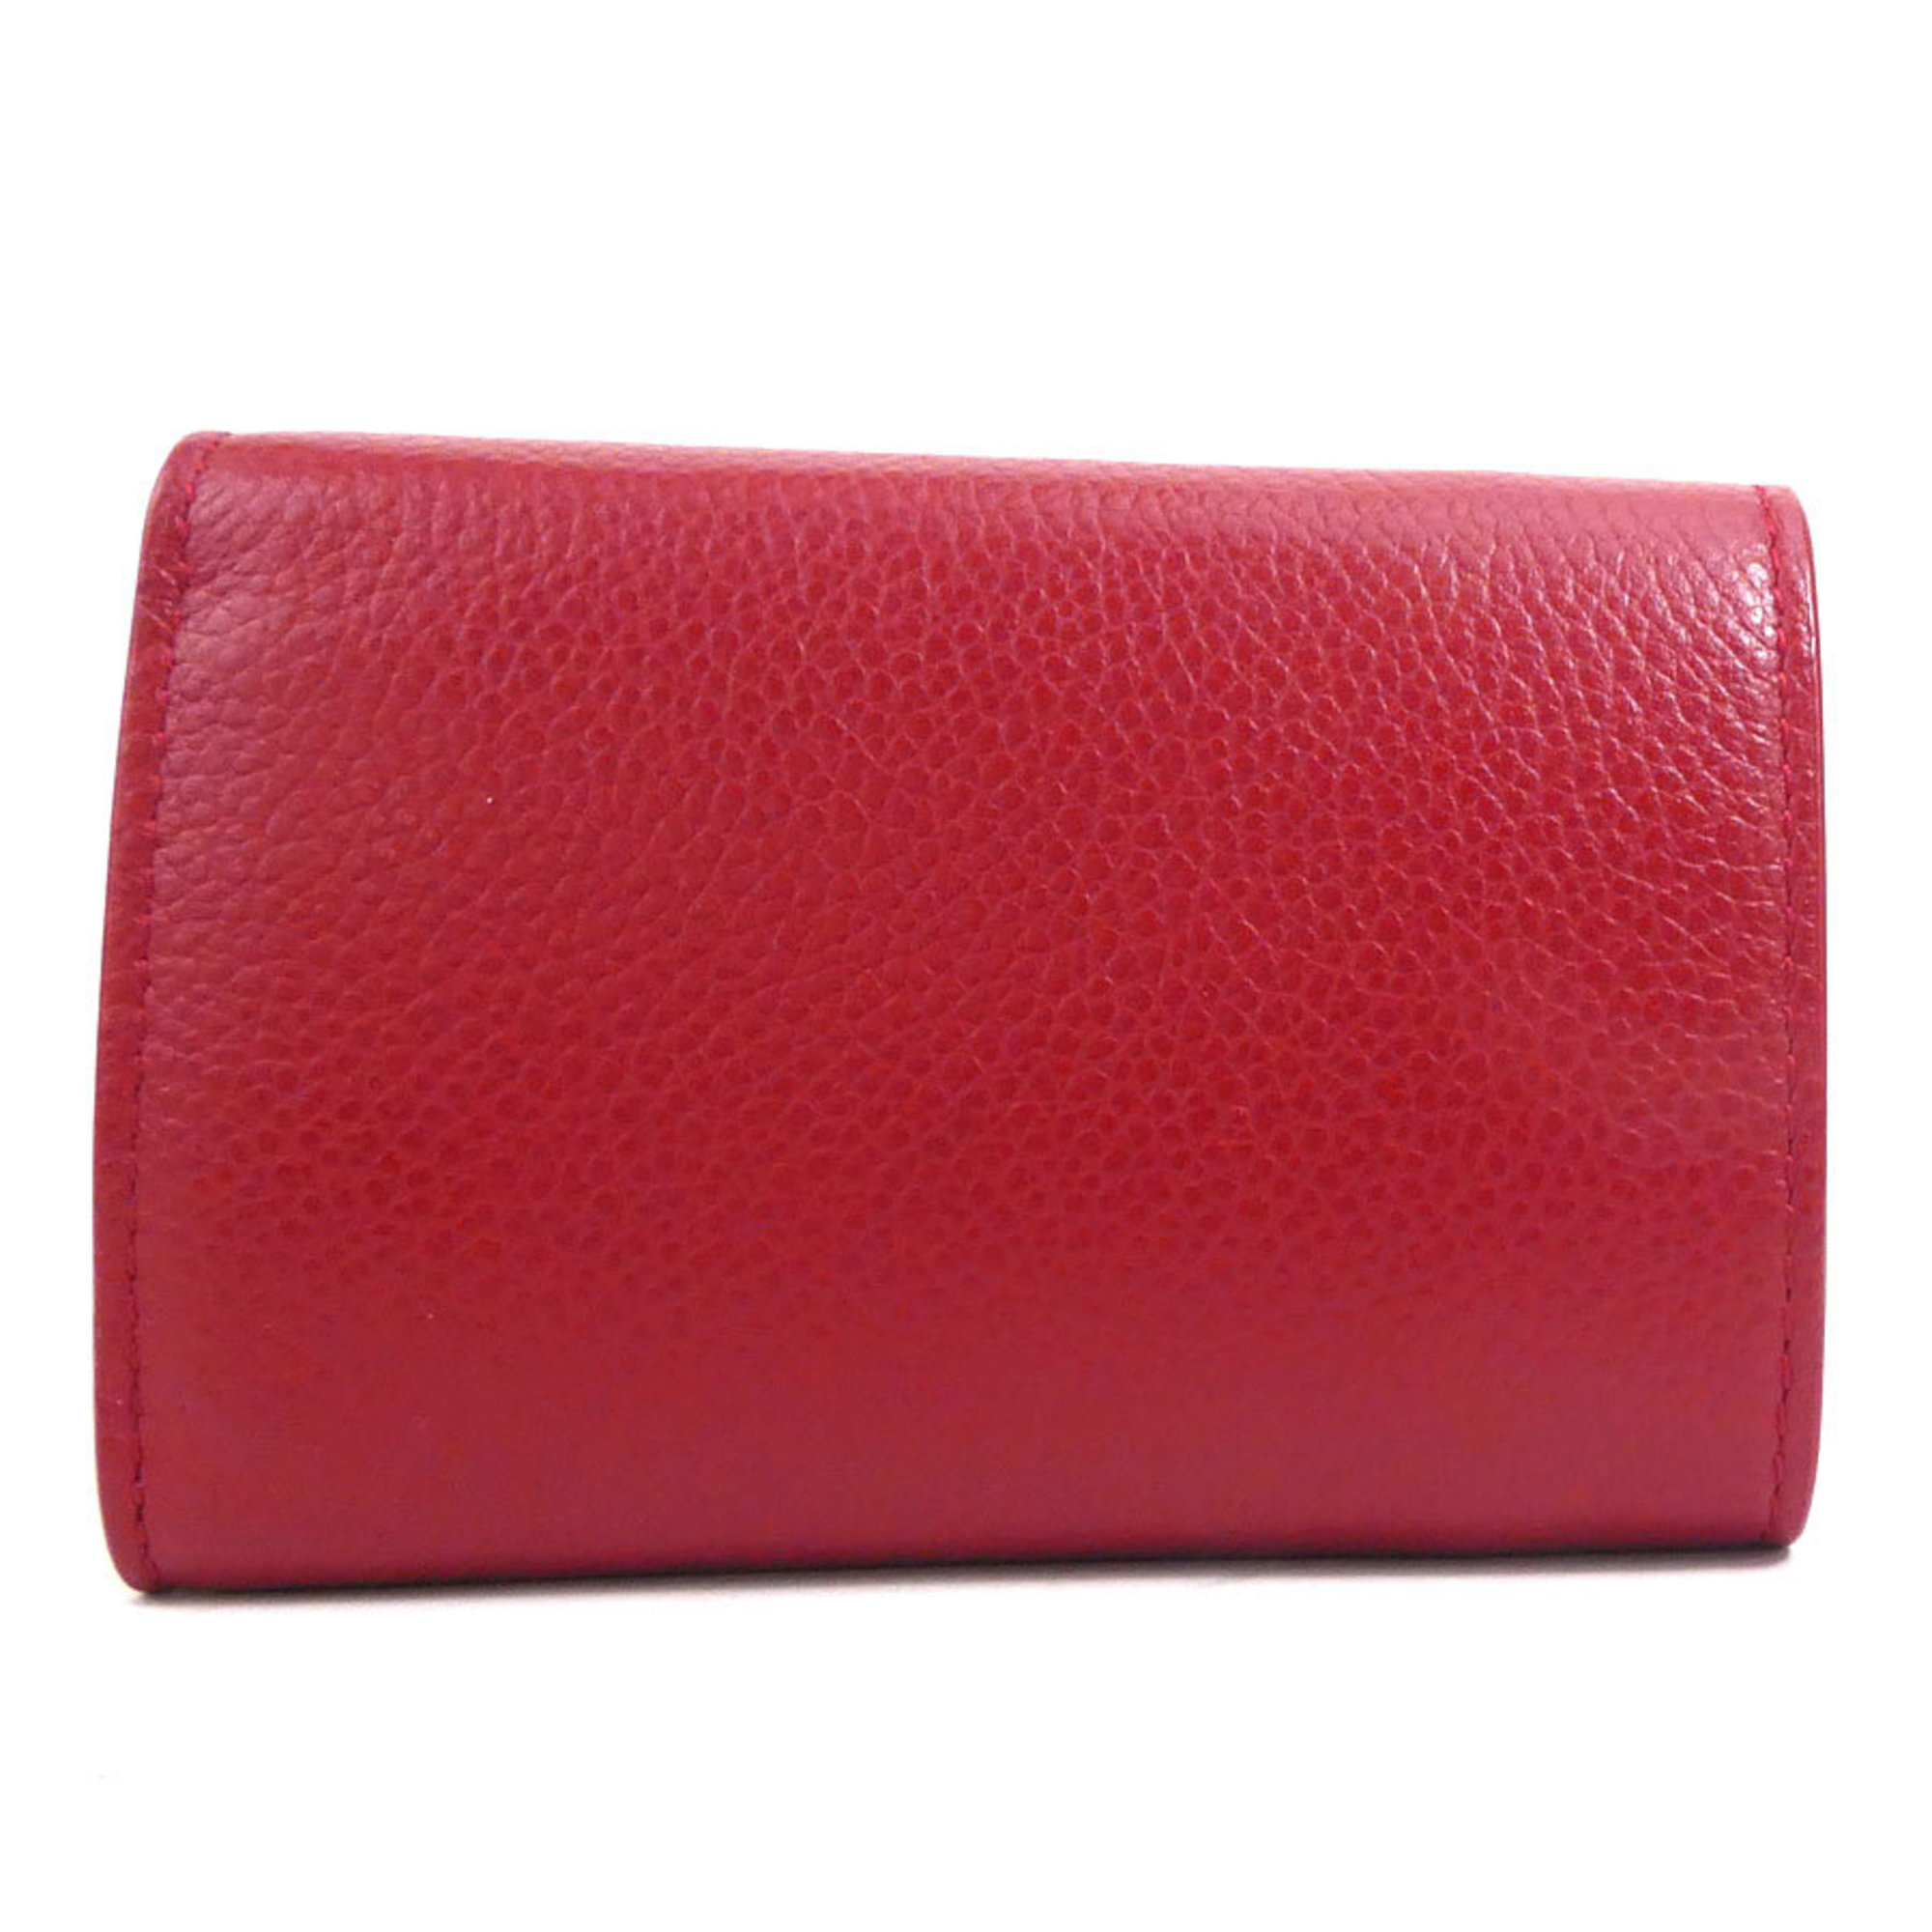 Saint Laurent SAINT LAURENT Trifold Wallet Leather Red Unisex